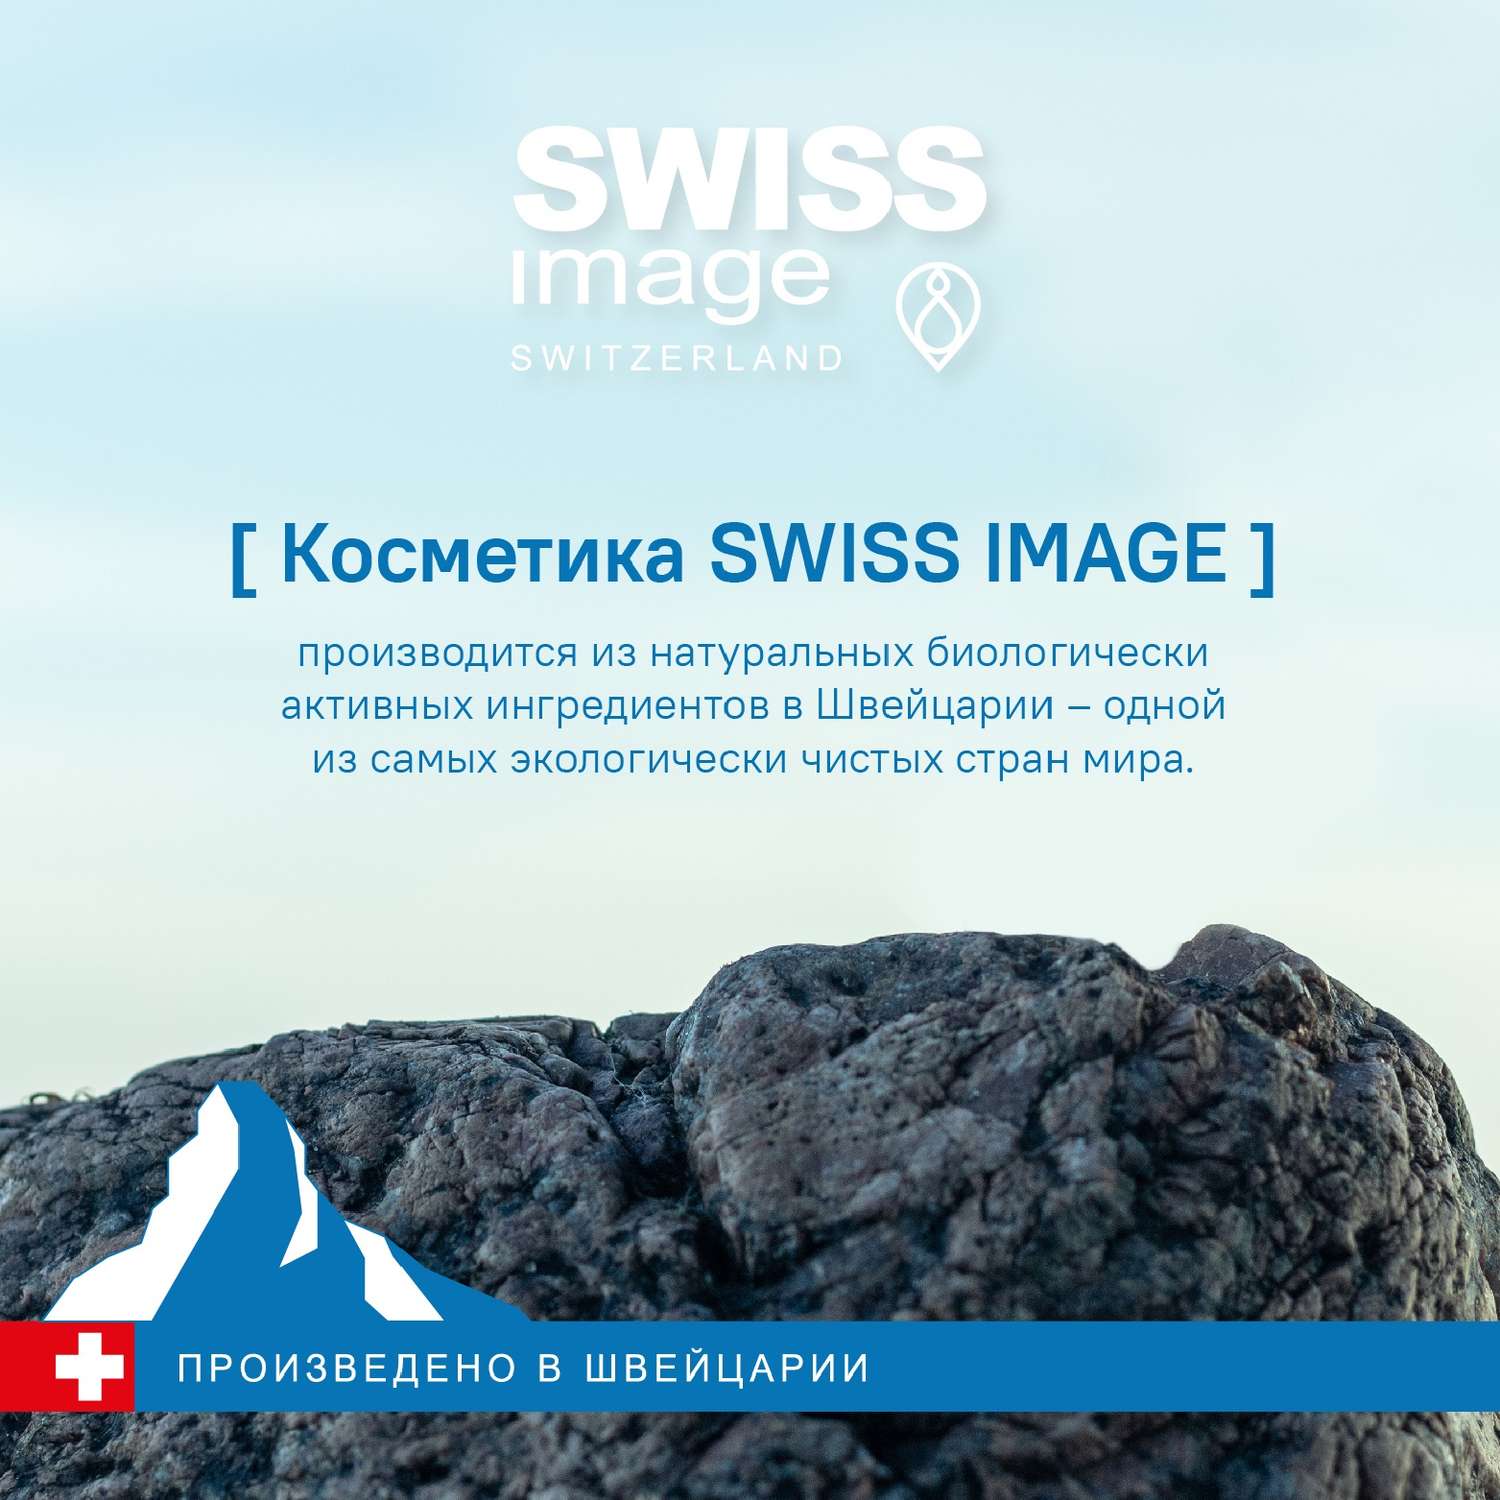 Матирующий тоник Swiss image совершенствующий кожу 200 мл - фото 10